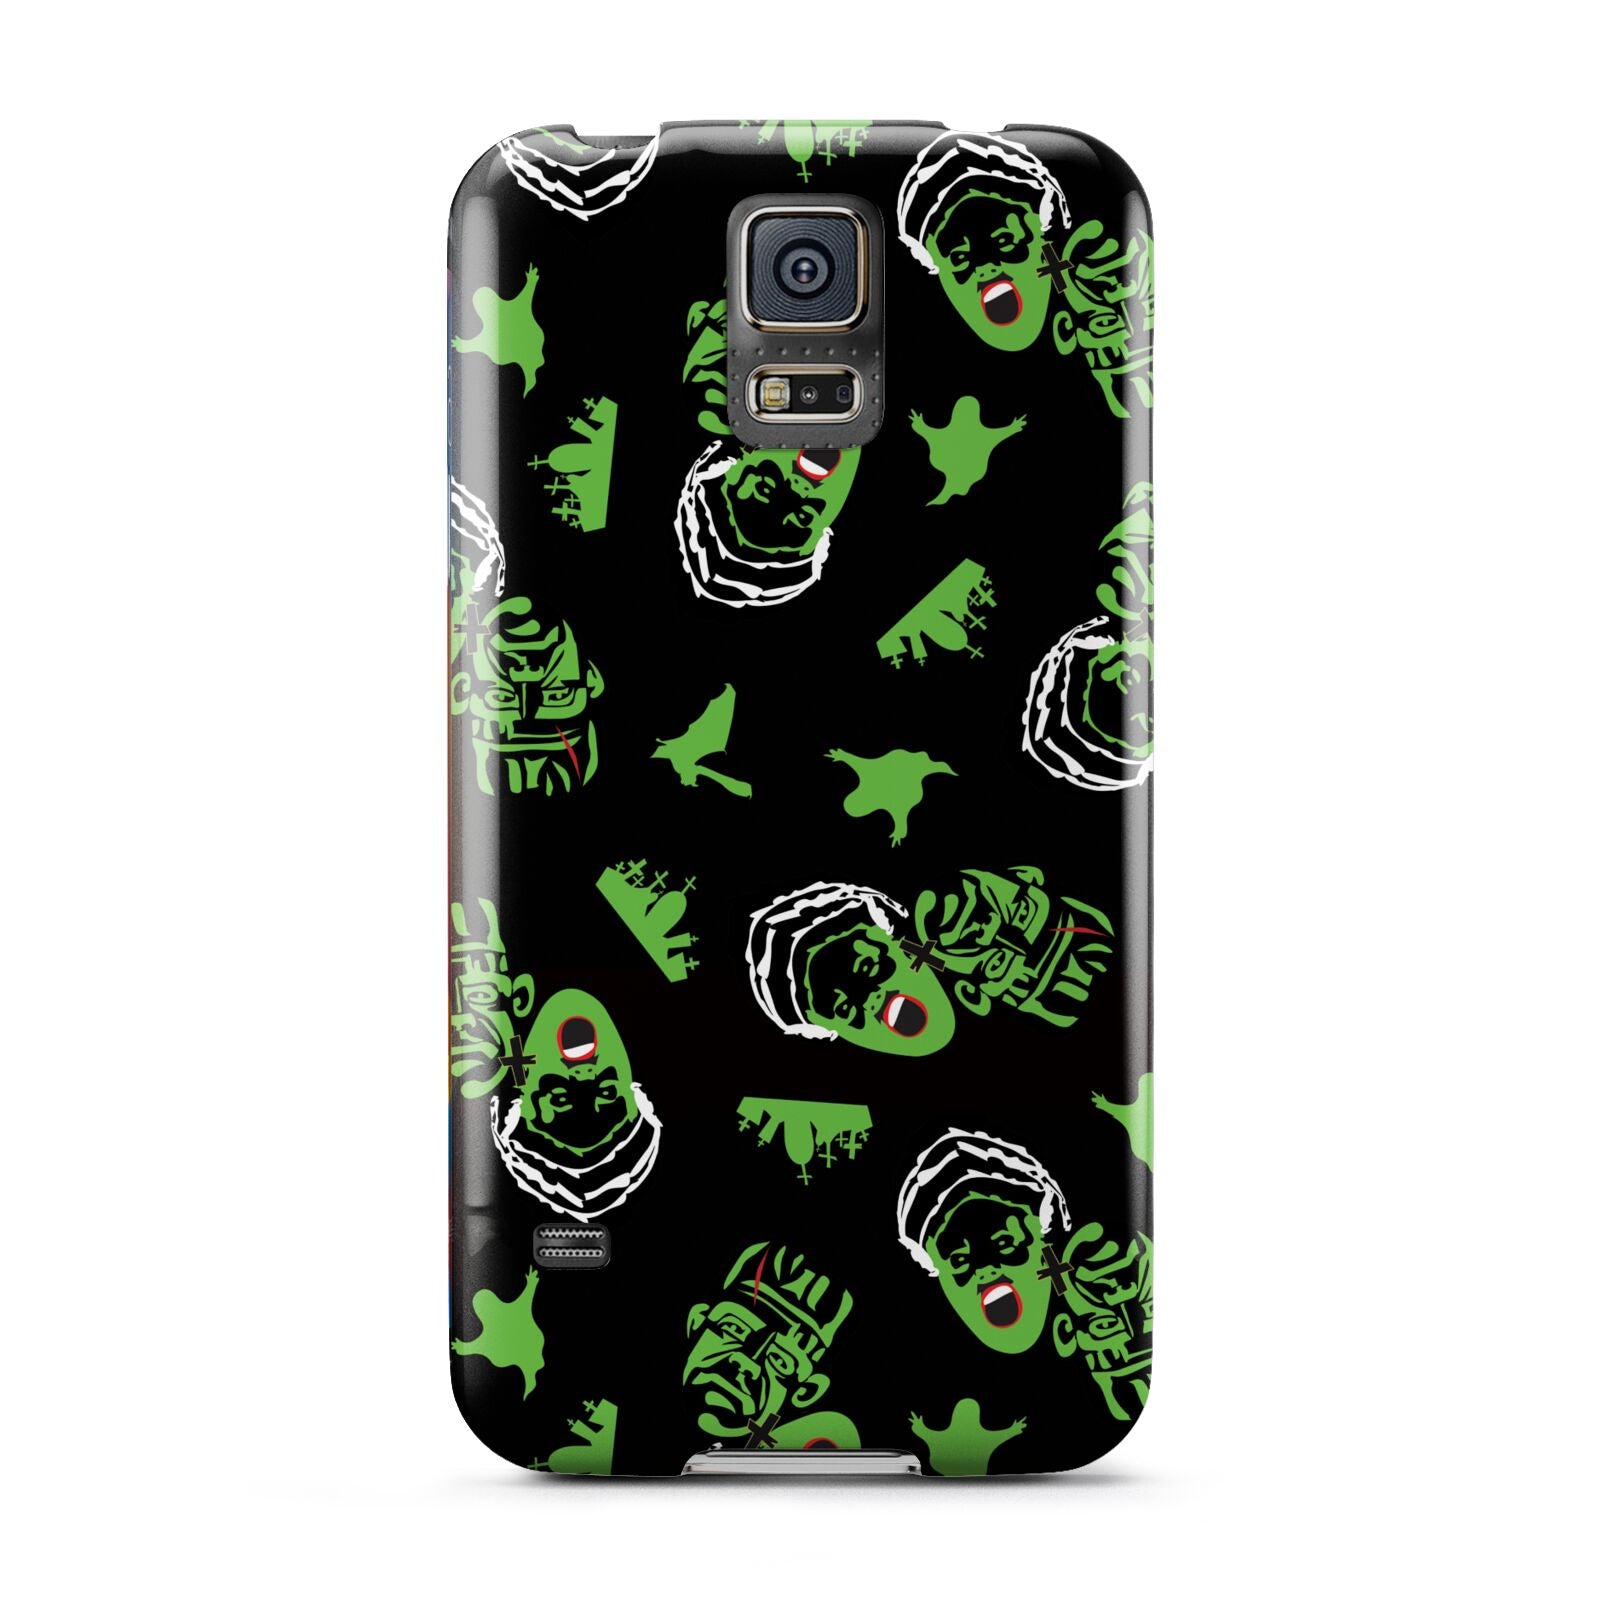 Movie Monster Samsung Galaxy S5 Case